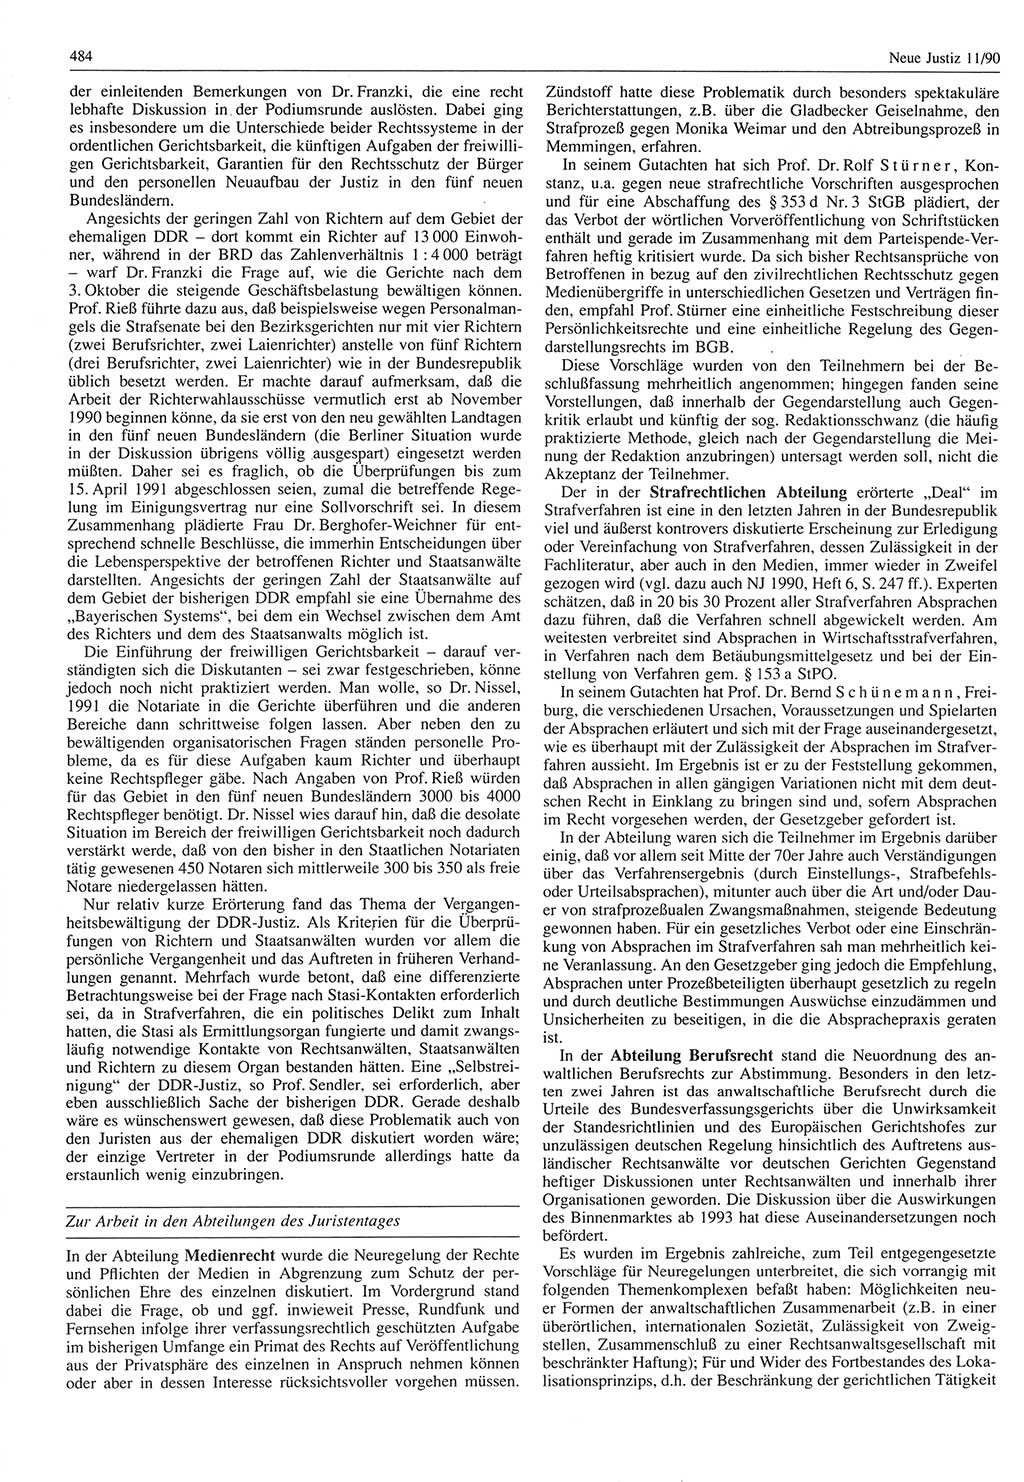 Neue Justiz (NJ), Zeitschrift für Rechtsetzung und Rechtsanwendung [Deutsche Demokratische Republik (DDR)], 44. Jahrgang 1990, Seite 484 (NJ DDR 1990, S. 484)